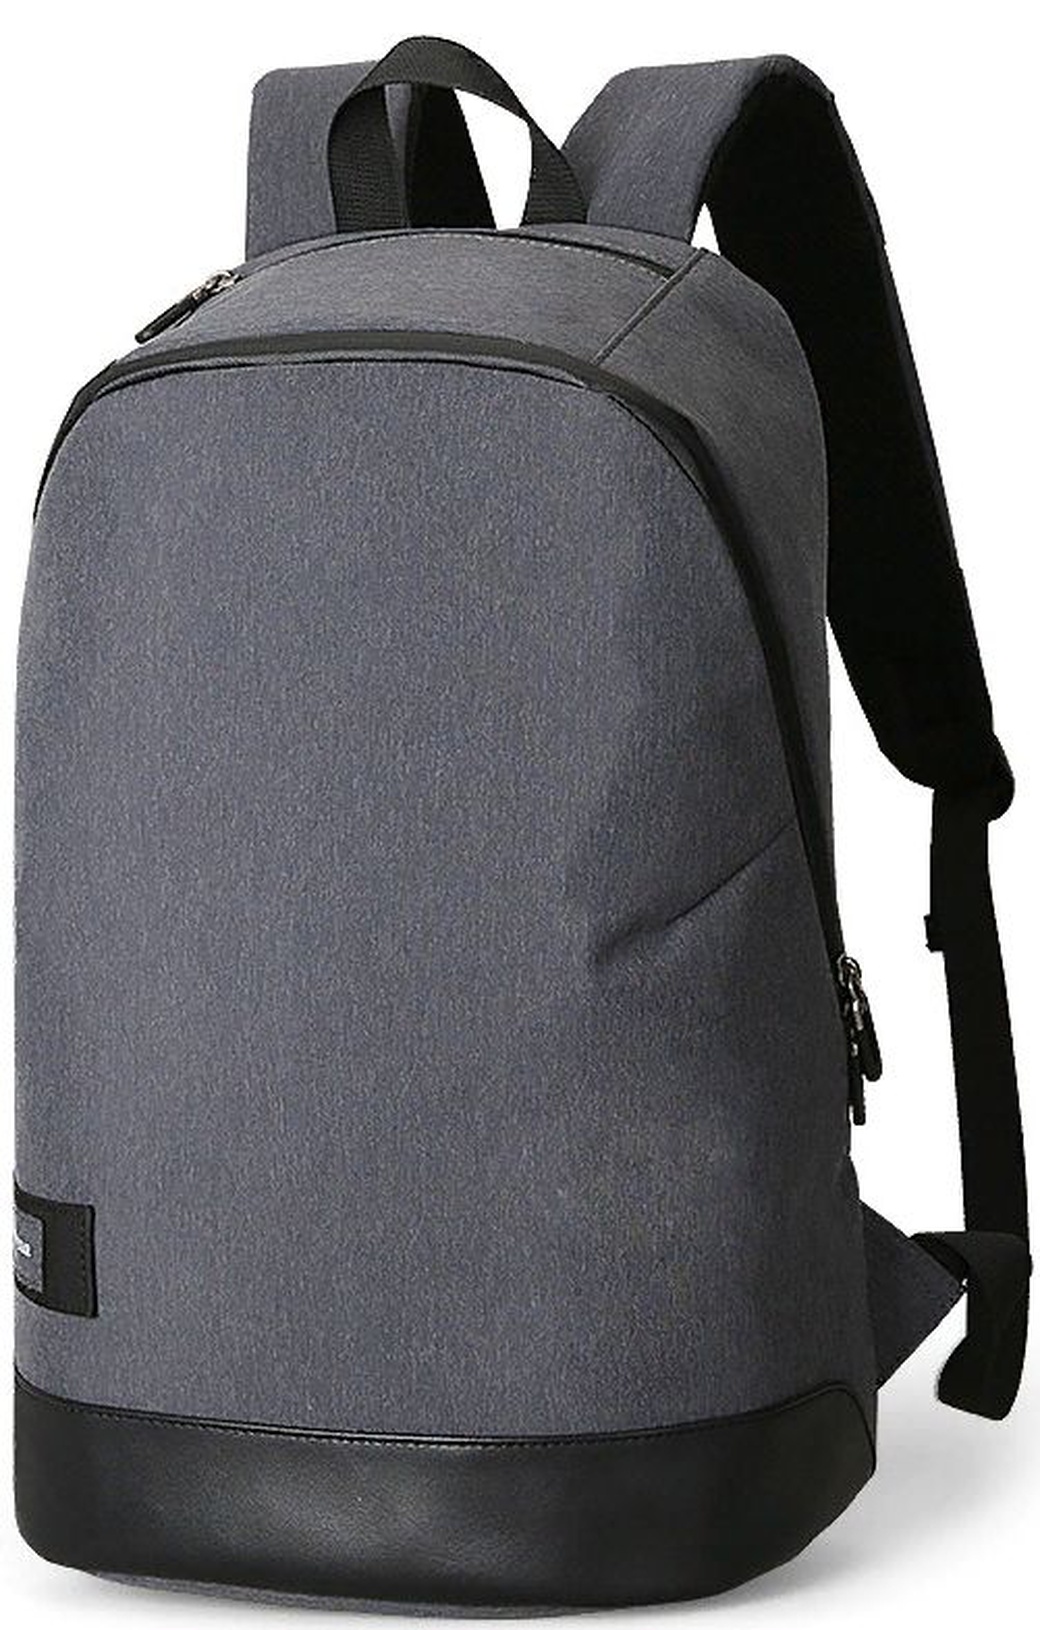 Рюкзак Mazzy Star MS210 для ноутбука 15.6", темно-серый фото